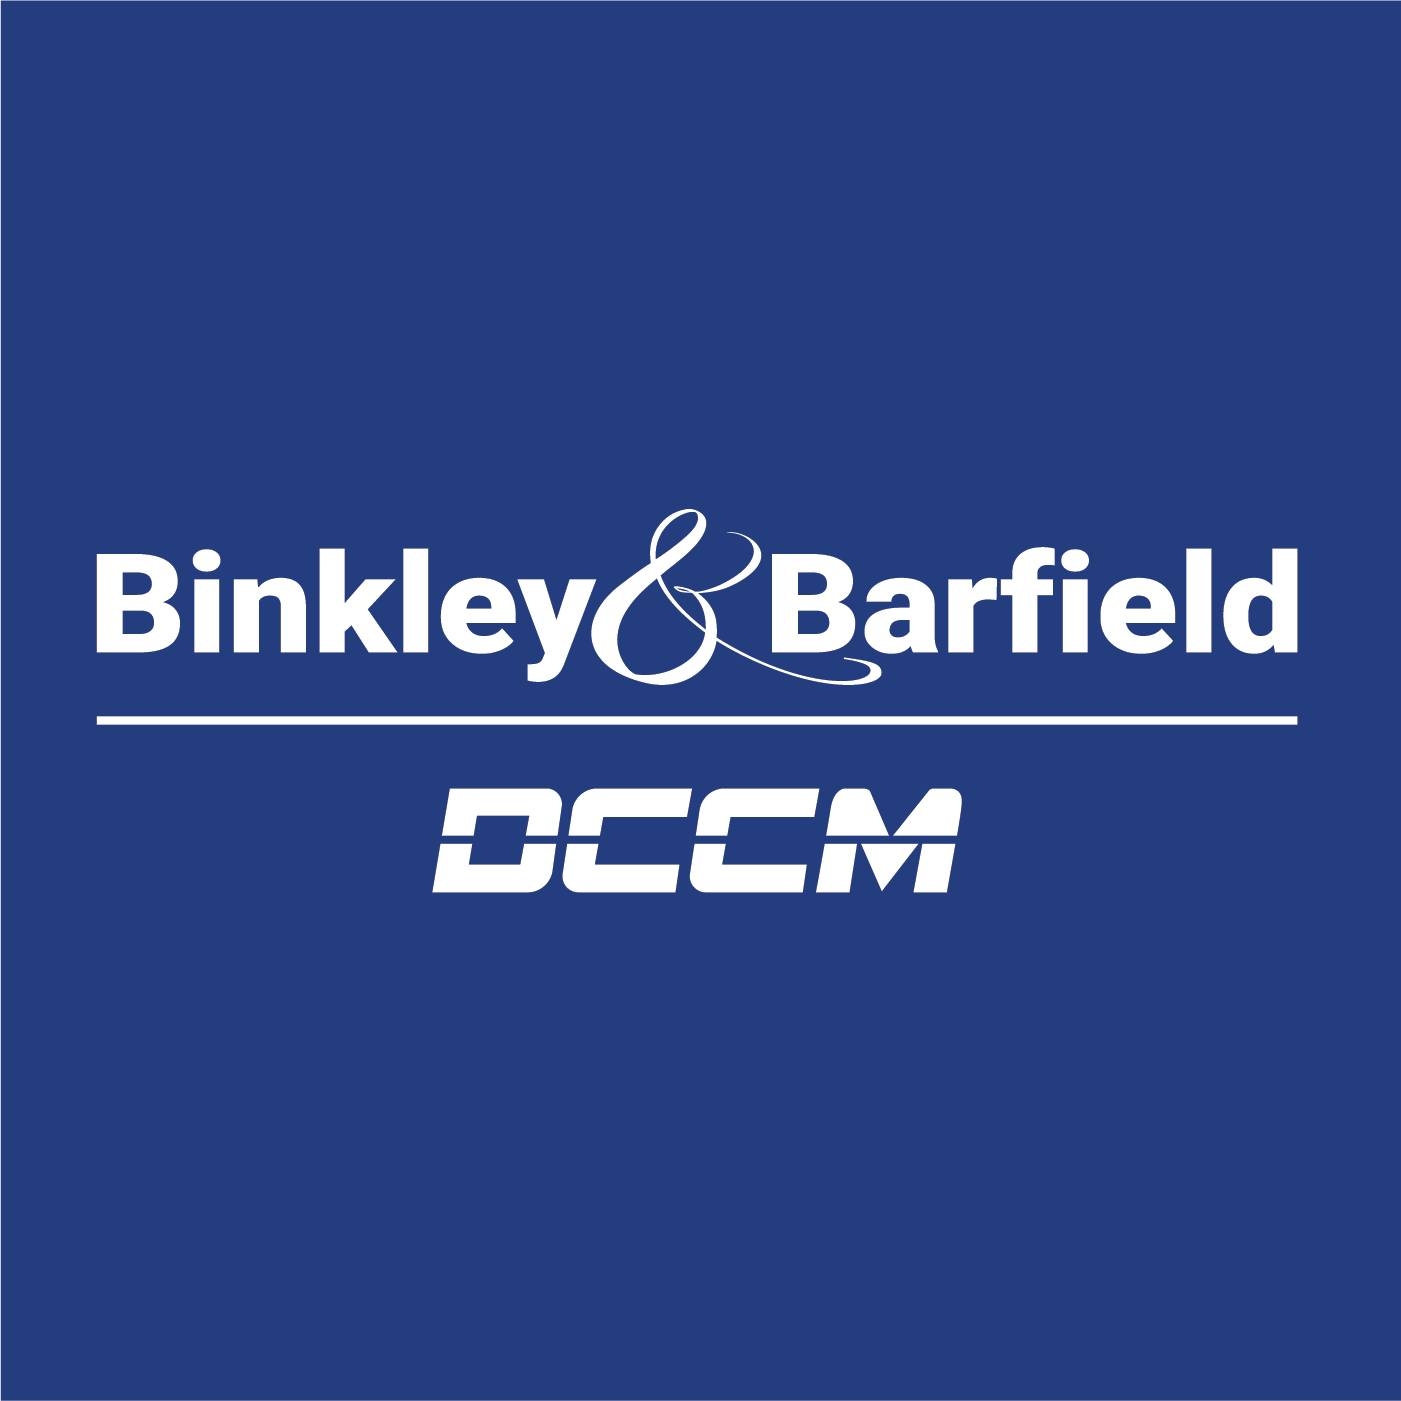 Binkley & Barfield